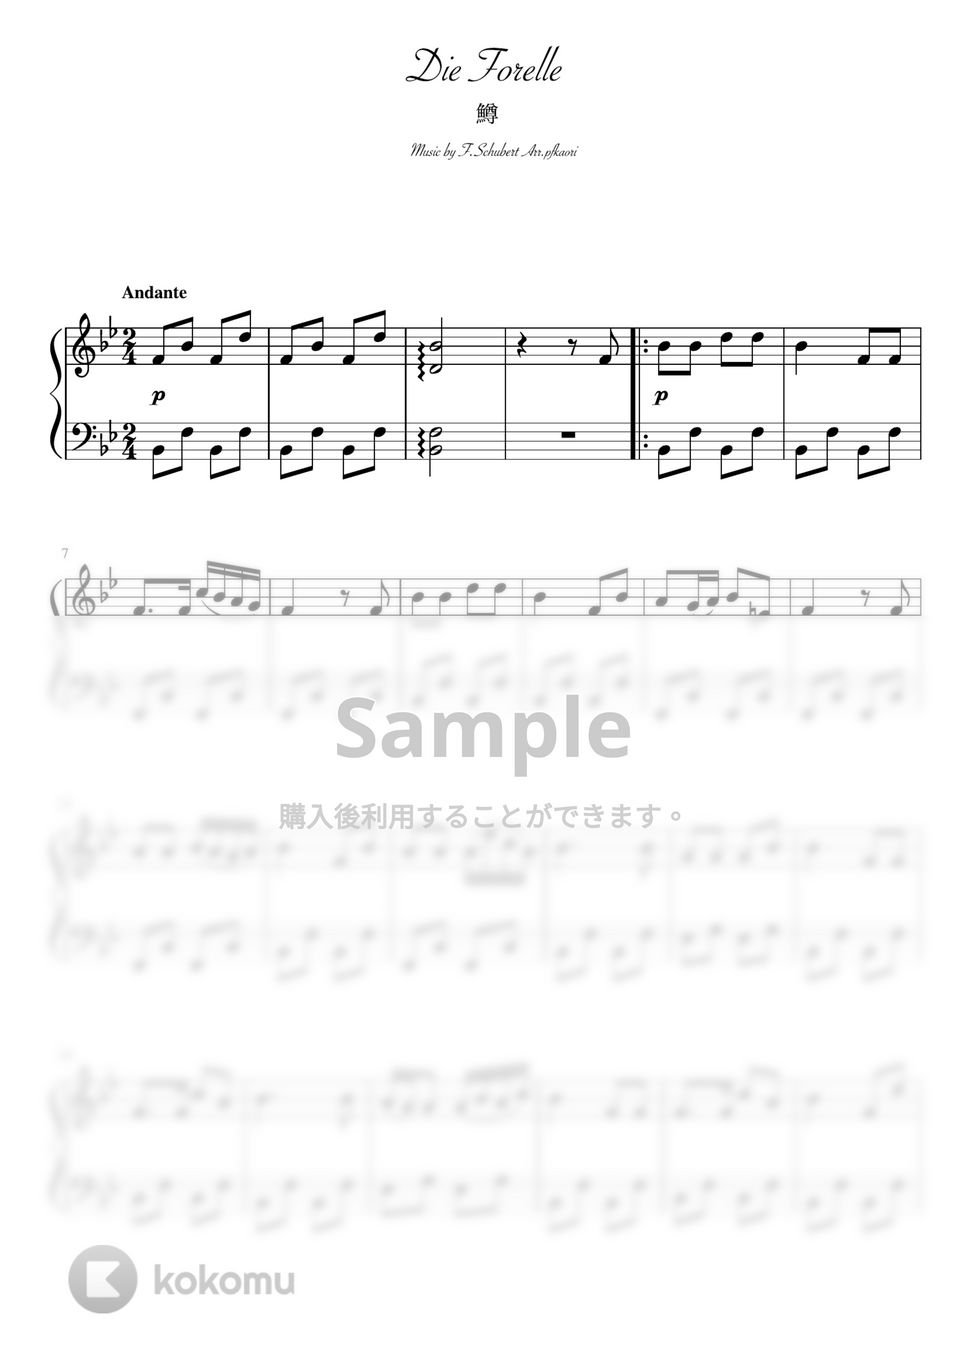 シューベルト - 鱒 (Bdur・ピアノソロ初級) by pfkaori